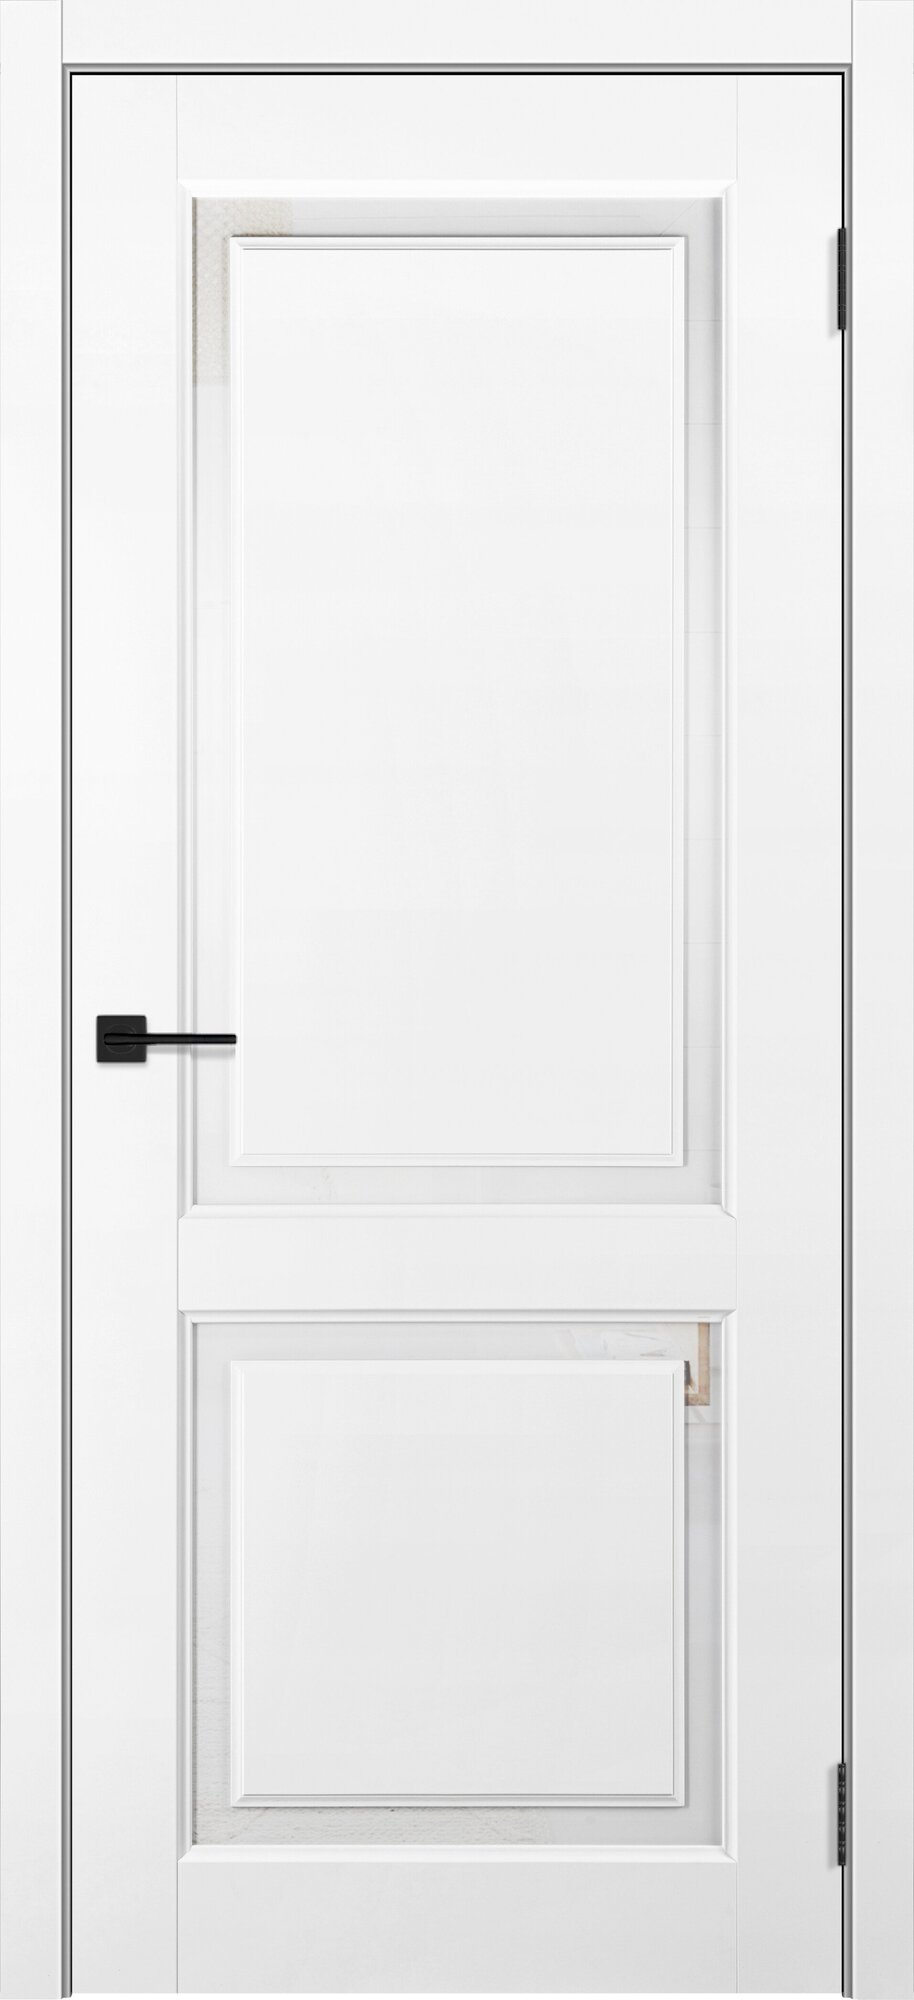 Межкомнатная дверь "Ллойд" - полотно, частично остекленная, покрытие Soft touch, толщина полотна 36. 800*2000*36мм